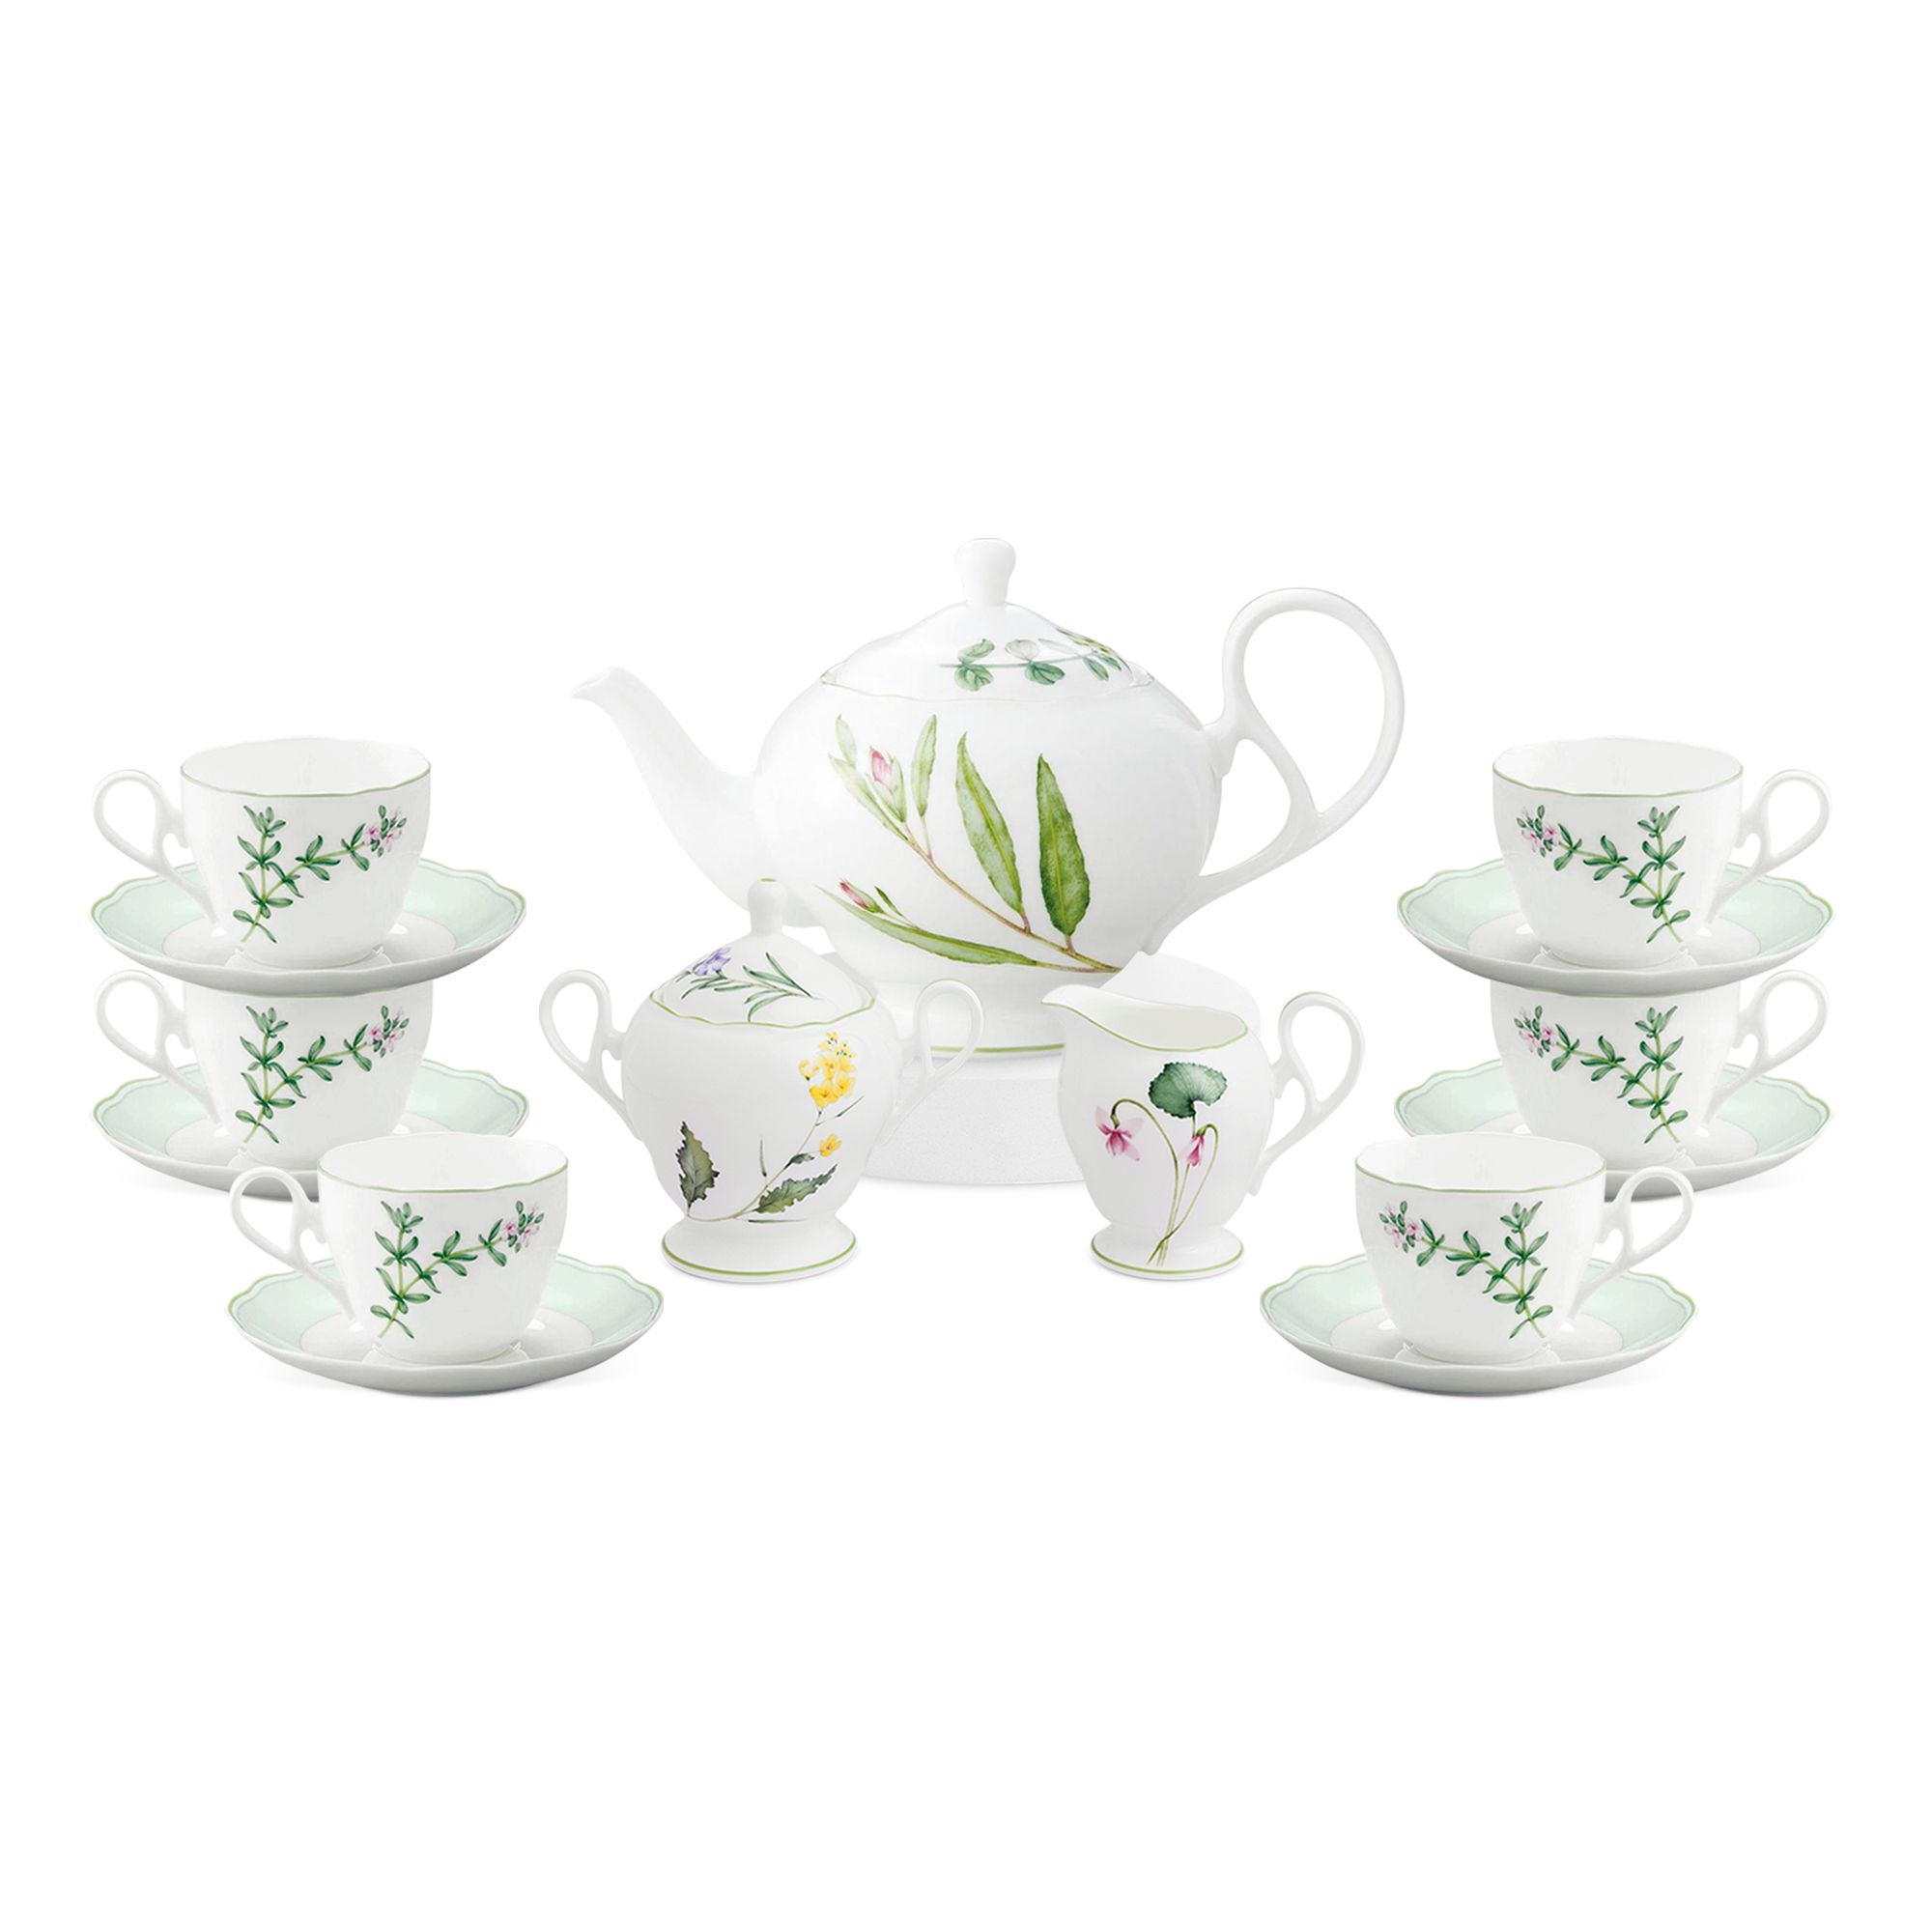  Bộ ấm chén uống trà 15 món (Bình trà 1.030ml, tách trà 250ml) | English Herbs 4942L-T017A 